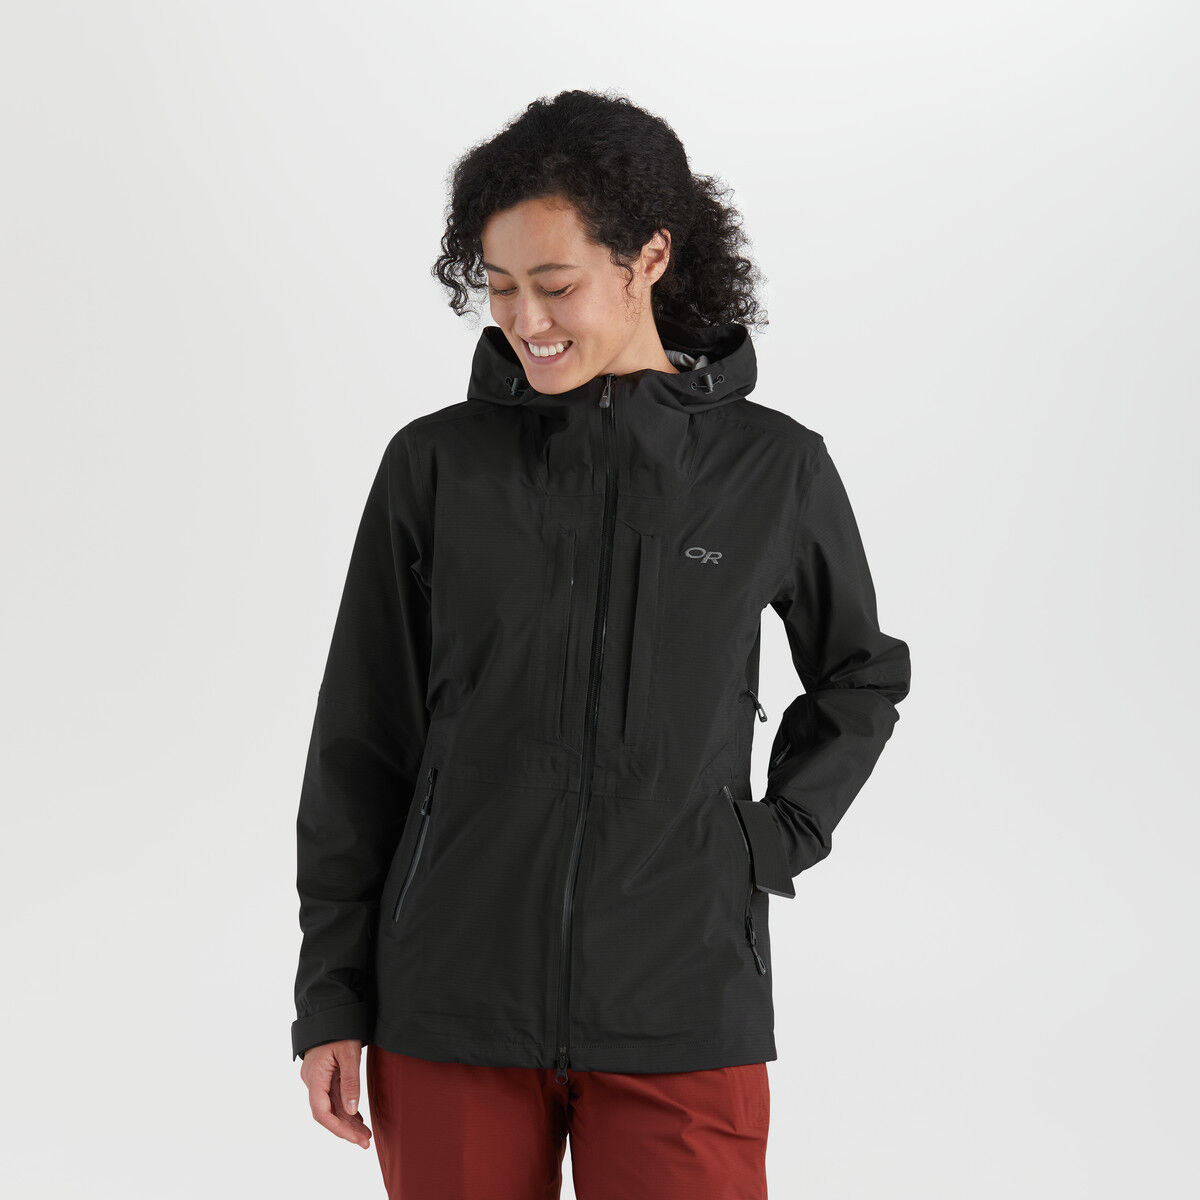 Outdoor Research Carbide Jacket - Laskettelutakki - Naiset